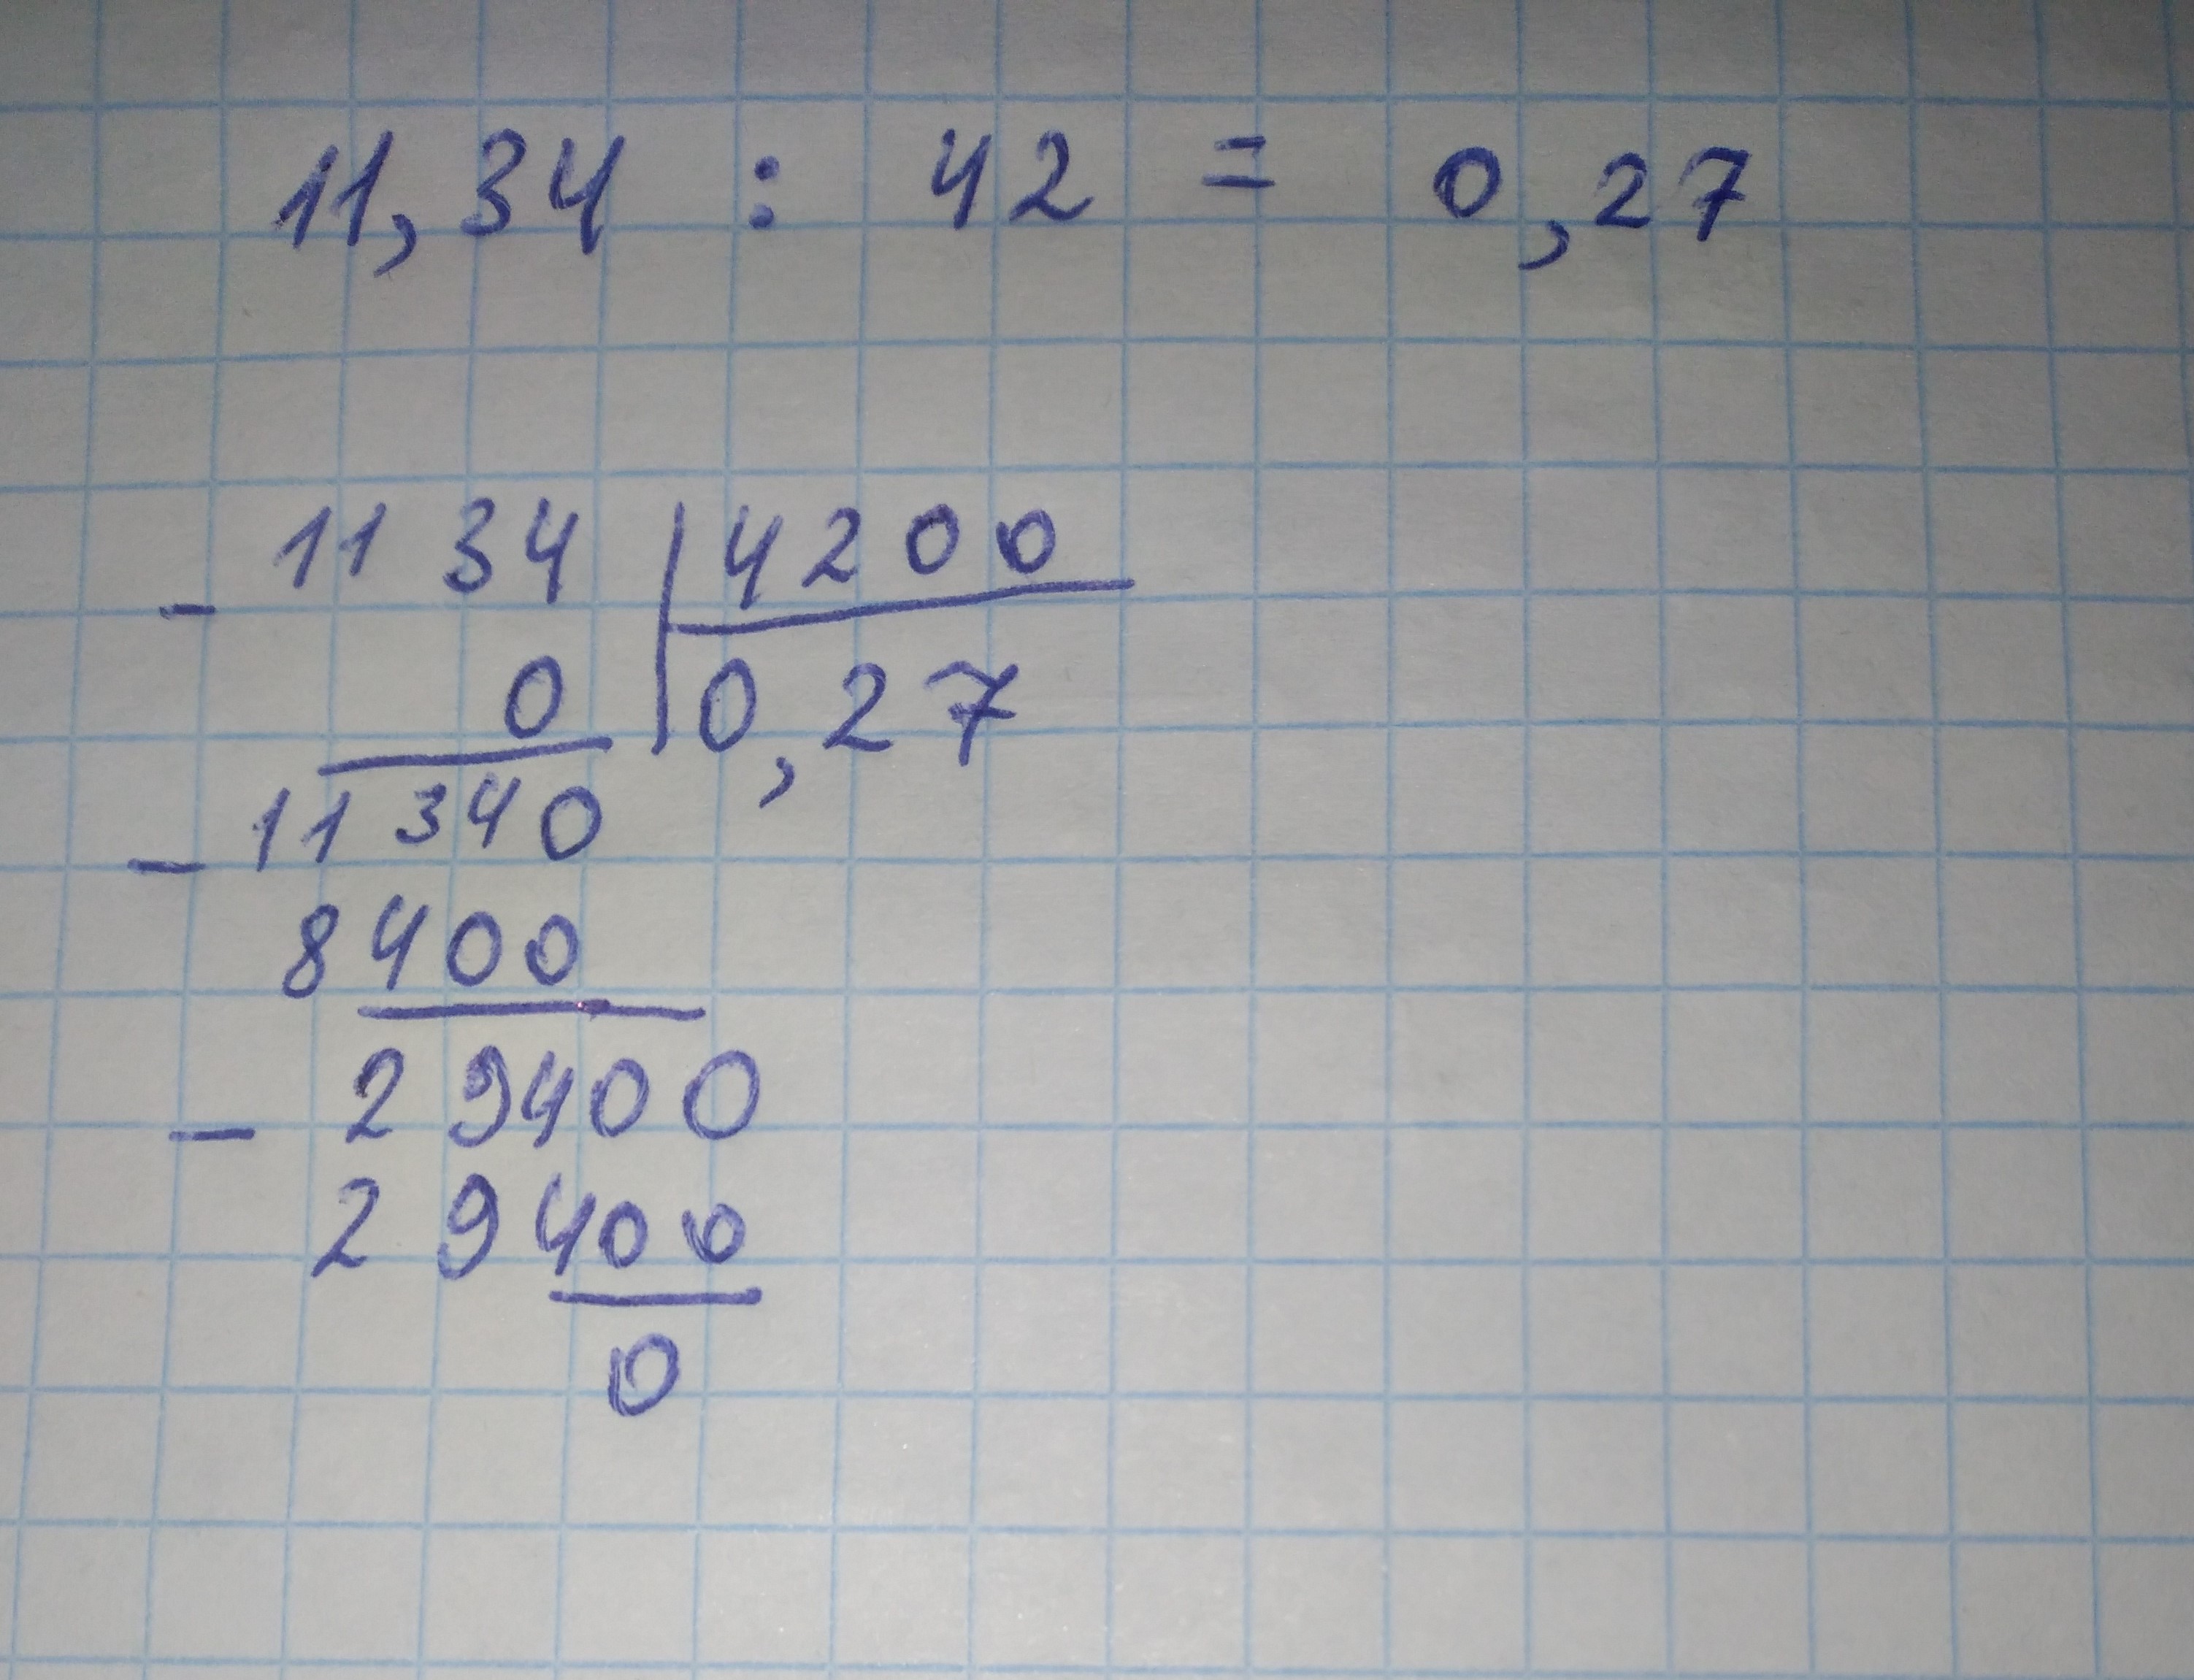 3 11 15 17 разделить 11 34. 50 Разделить на 7. 0,2 Разделить на 20. 84 Делим на 0. 0,84:2,1 Столбиком.